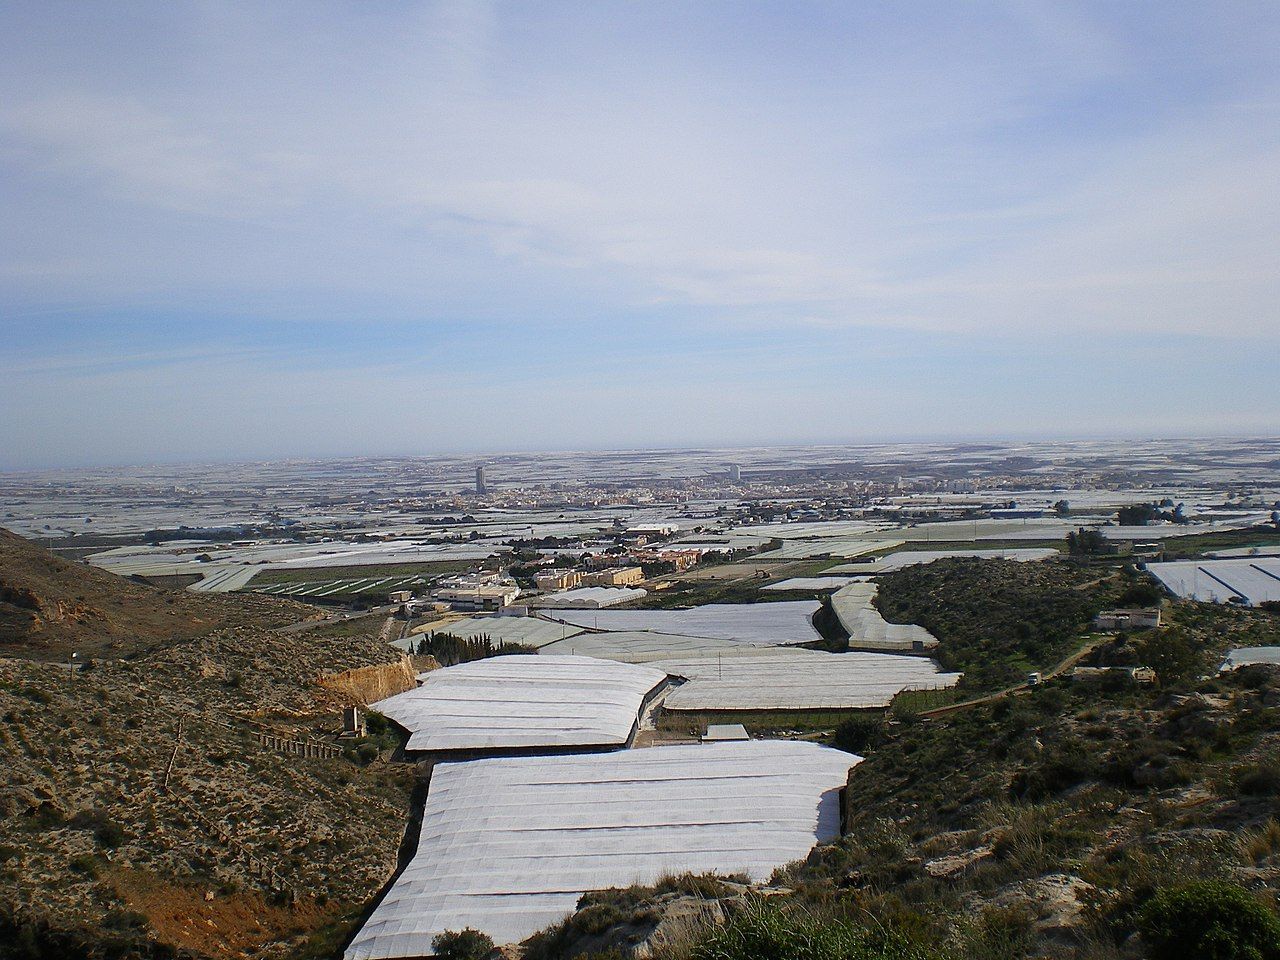 Vista del 'mar de plástico' en El Ejido.